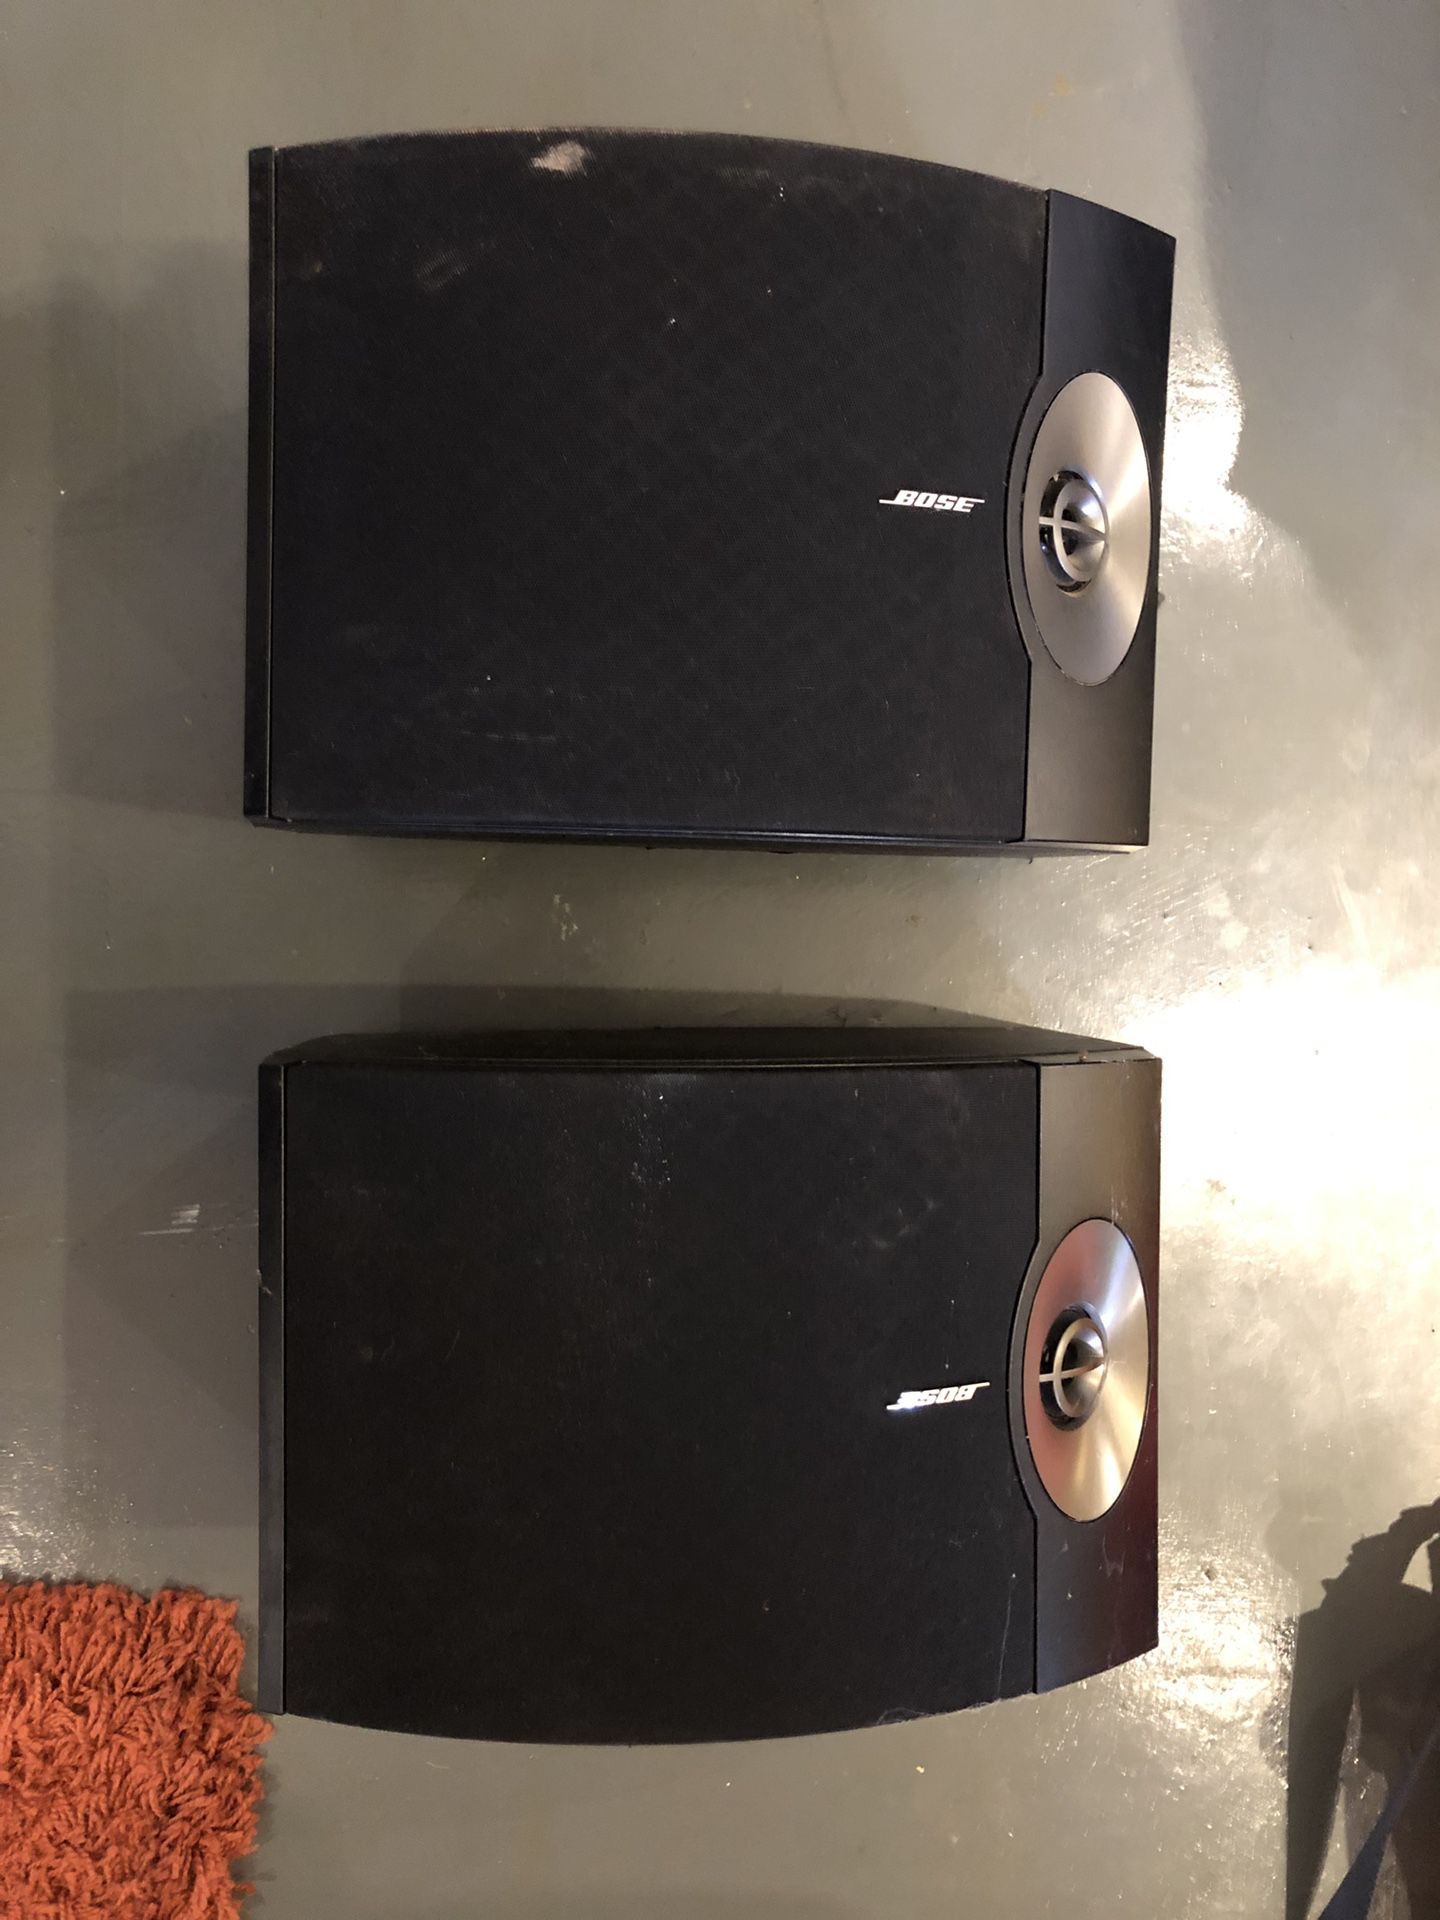 2 301V Bose speakers